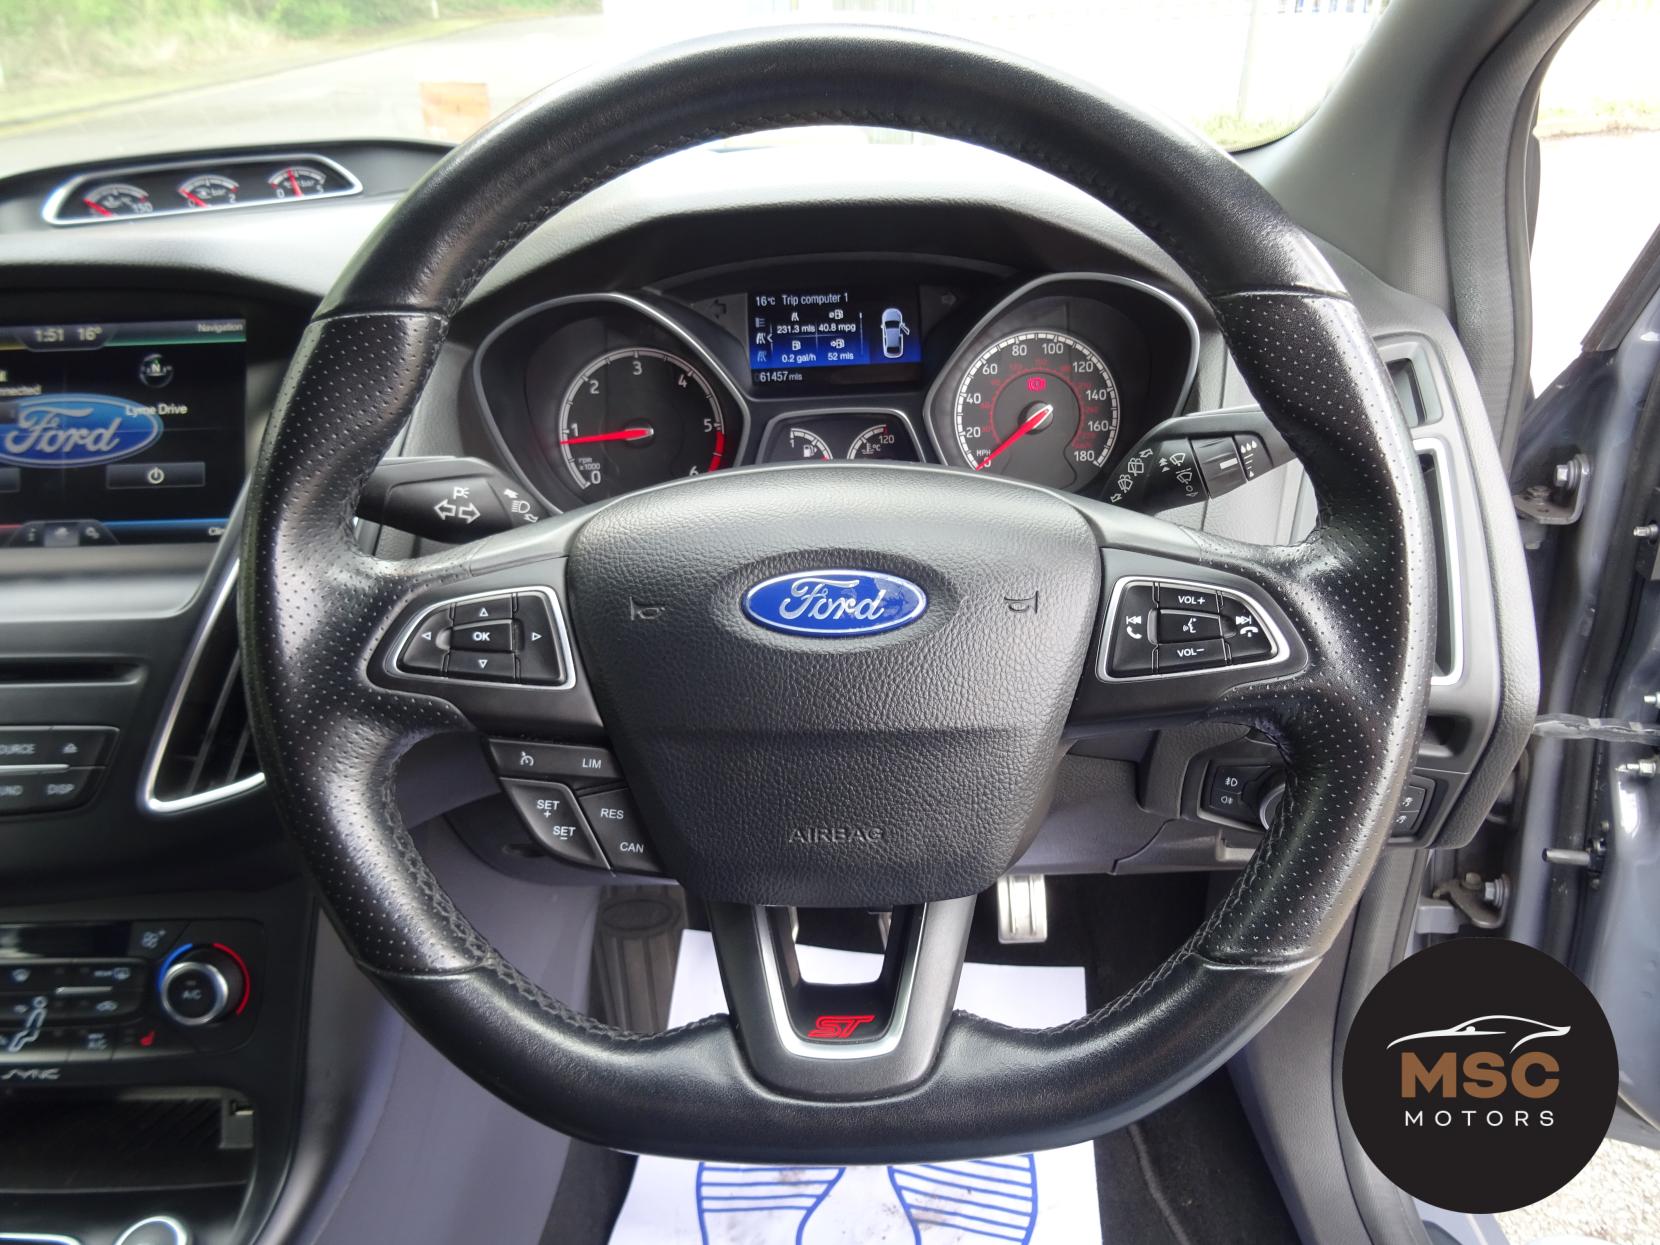 Ford Focus 2.0 TDCi ST-3 Hatchback 5dr Diesel Manual Euro 6 (s/s) (185 ps)